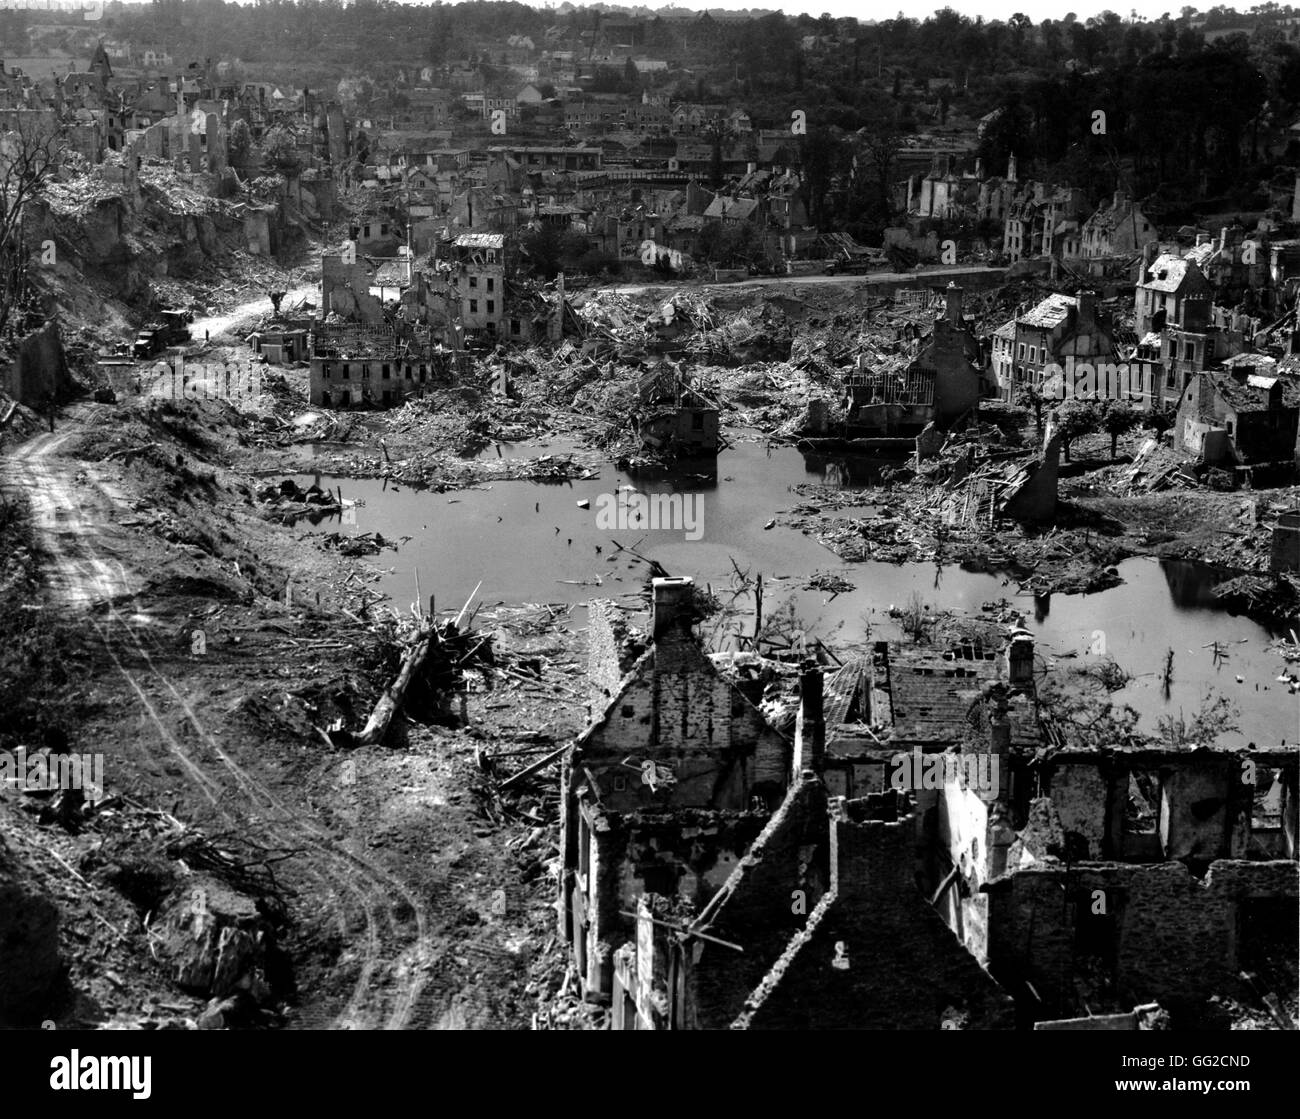 Normandie: Saint Lô völlig zerstört von deutschen und alliierten Bombardierung, aber auch durch Luftangriffe 1944 Frankreich, Zweiter Weltkrieg Krieg National Archives in Washington Stockfoto